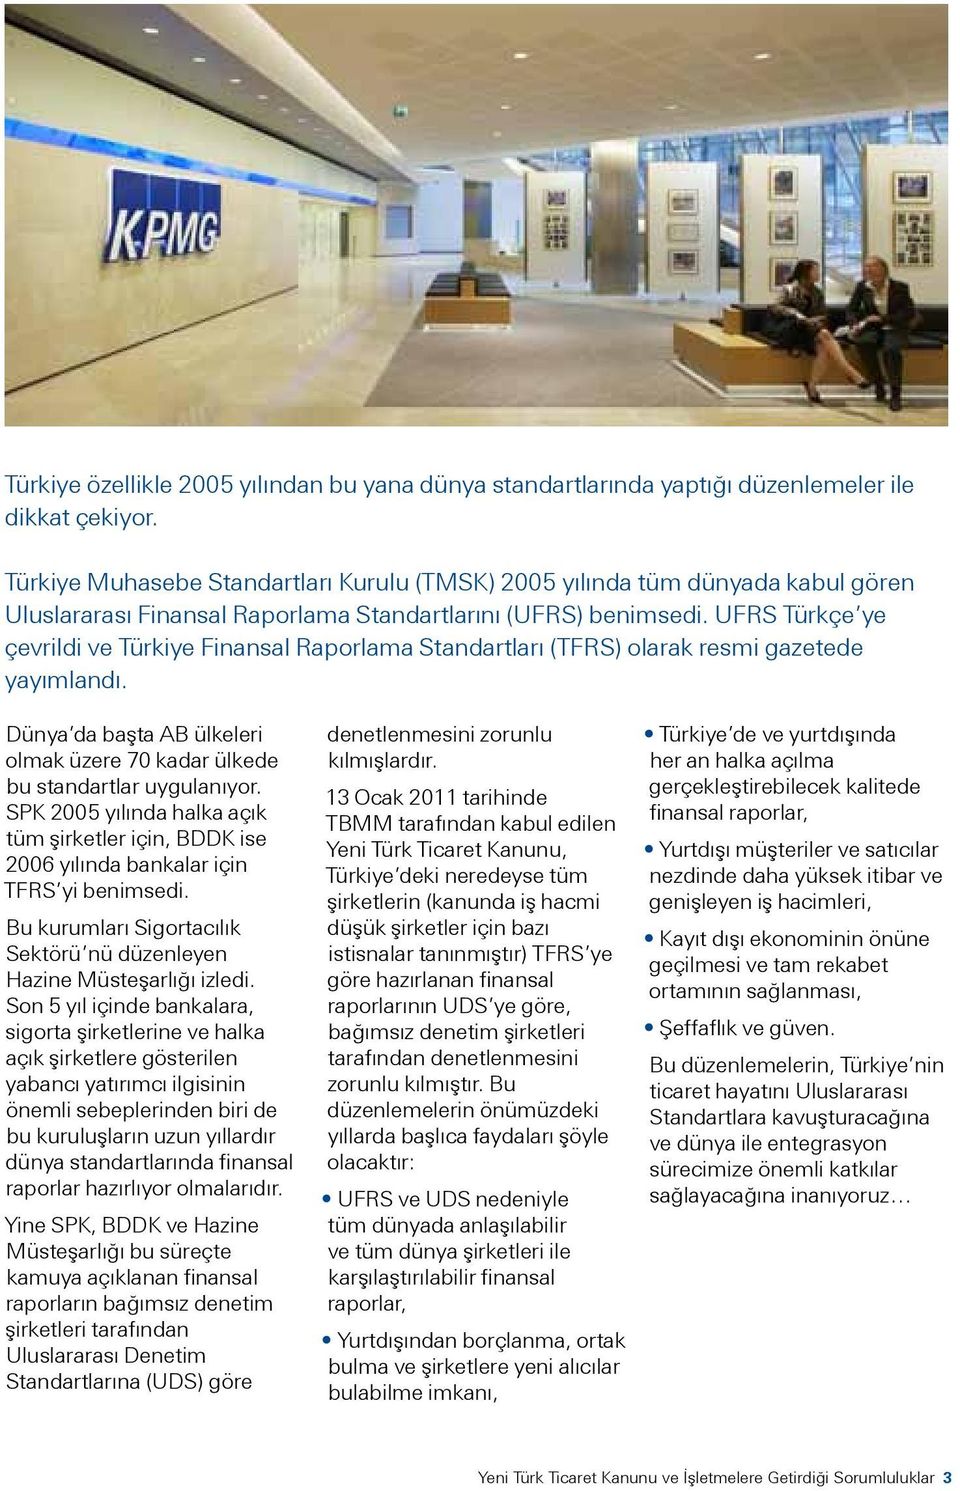 UFRS Türkçe ye çevrildi ve Türkiye Finansal Raporlama Standartları (TFRS) olarak resmi gazetede yayımlandı. Dünya da başta AB ülkeleri olmak üzere 70 kadar ülkede bu standartlar uygulanıyor.